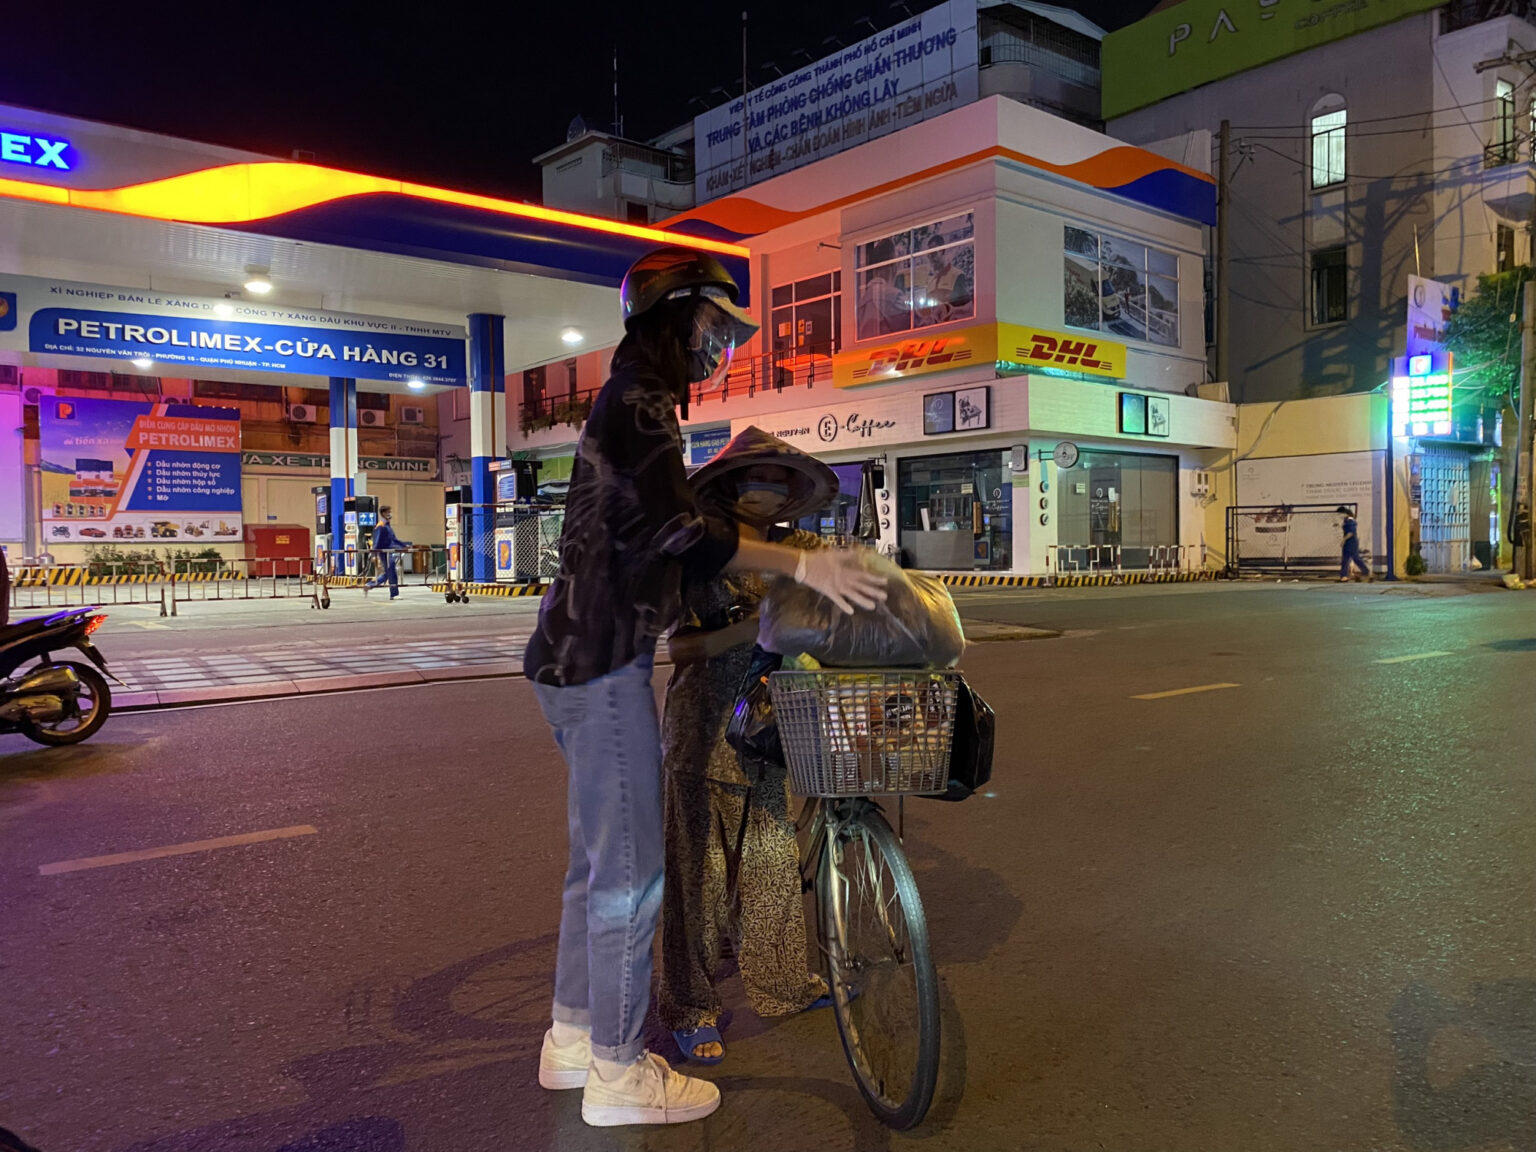 nghệ sỹ Việt tận tay nấu cơm, giao đồ ăn cho bà con Sài Gòn mùa dịch